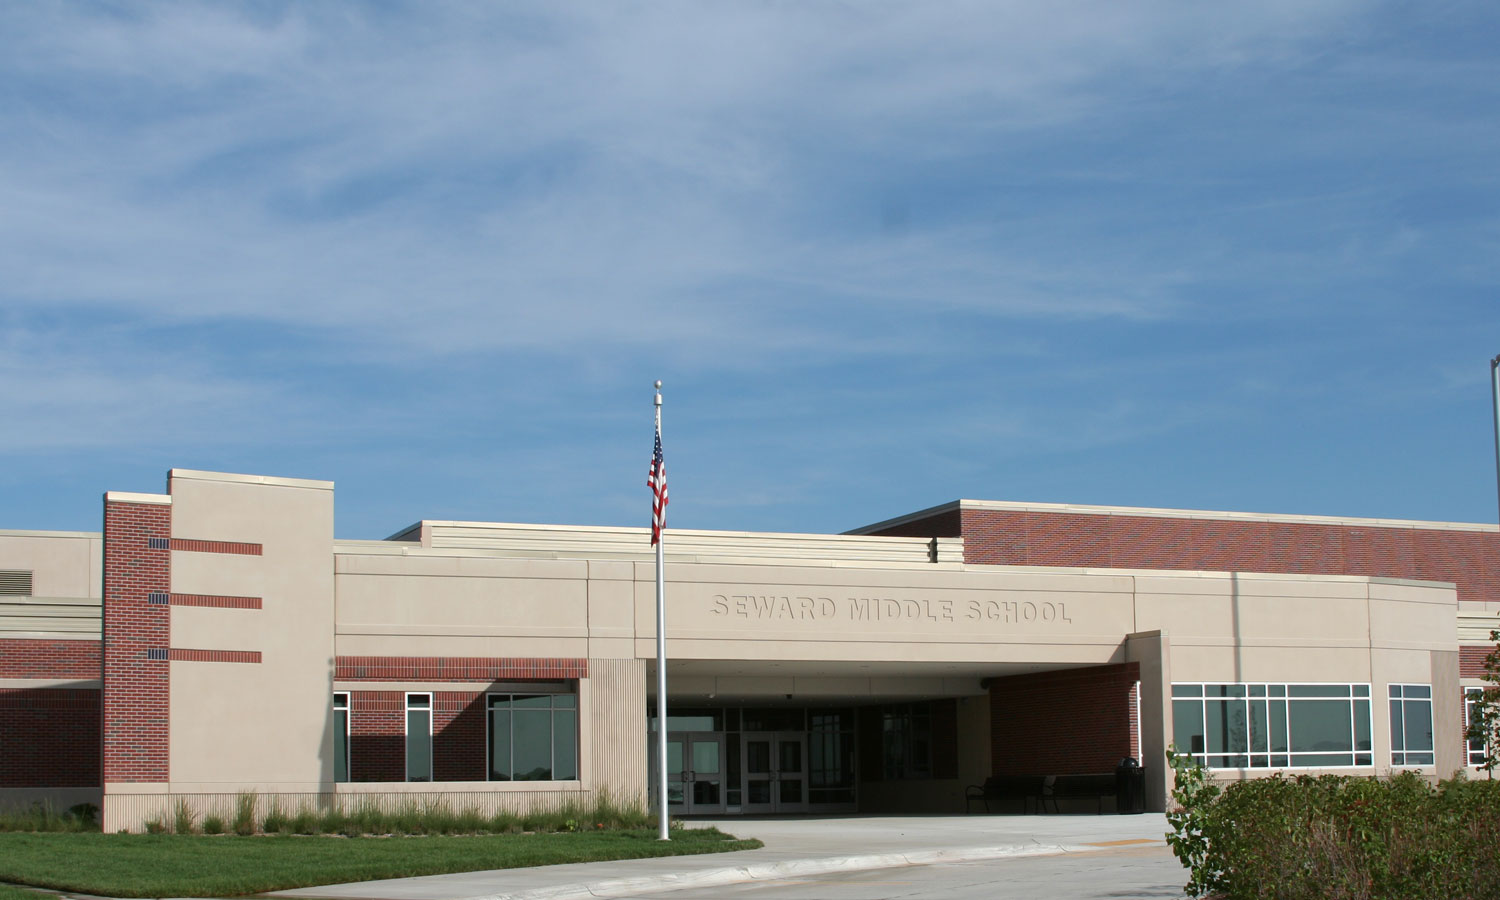 Seward Middle School